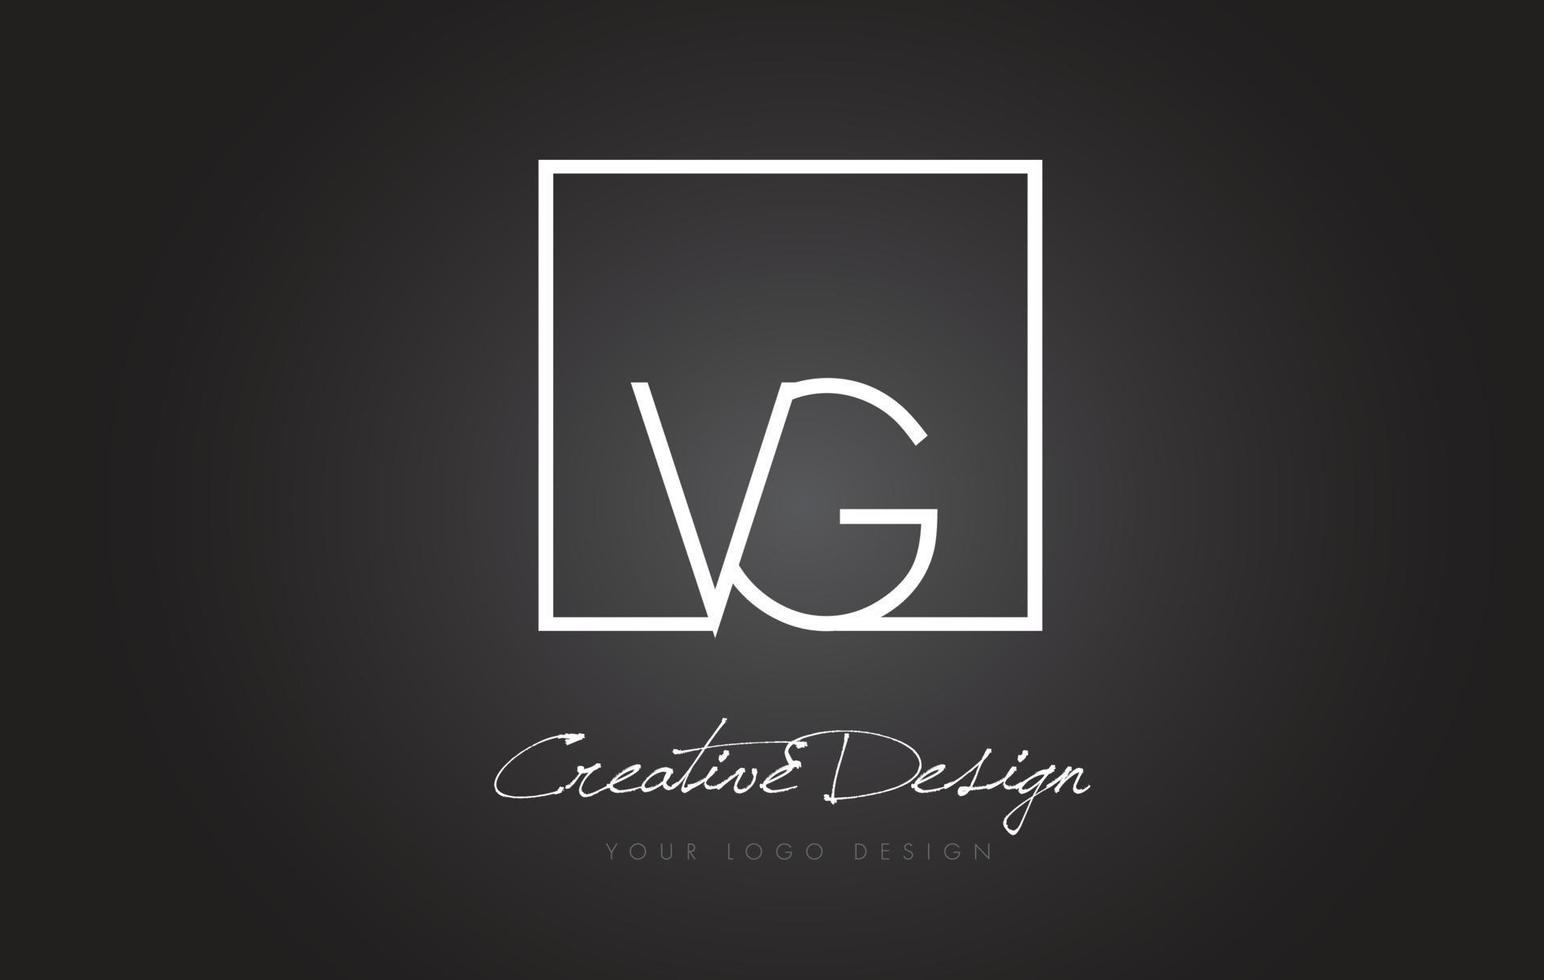 VG Quadratisches Rahmenbuchstabe-Logo-Design mit schwarzen und weißen Farben. vektor